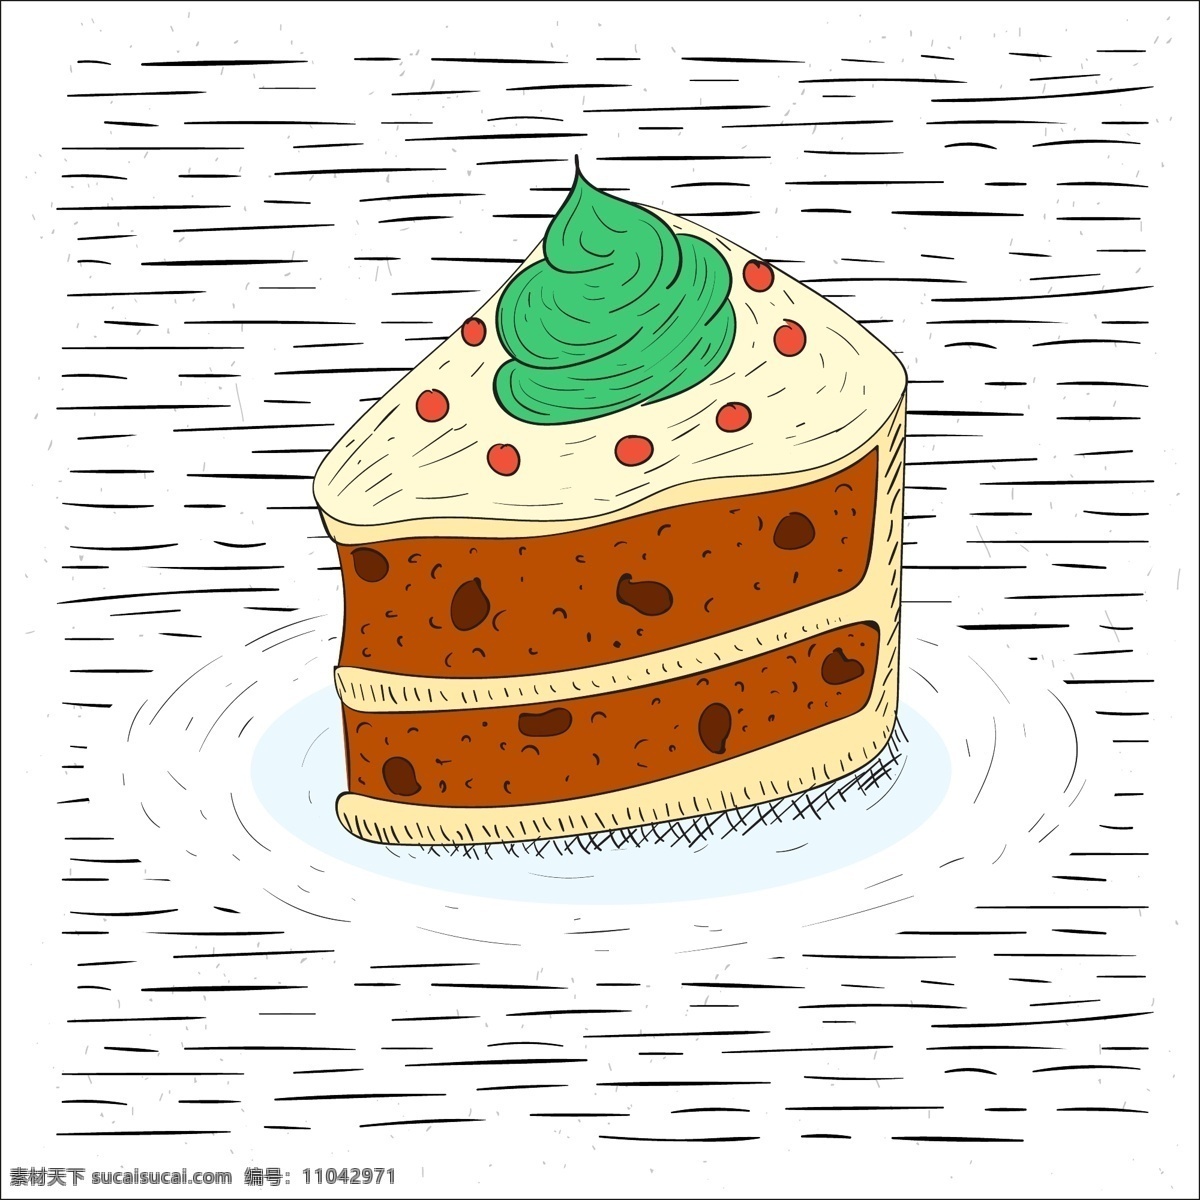 手绘 矢量 蛋糕 插画 矢量素材 手绘插画 手绘蛋糕 手绘食物 手绘甜点 甜品